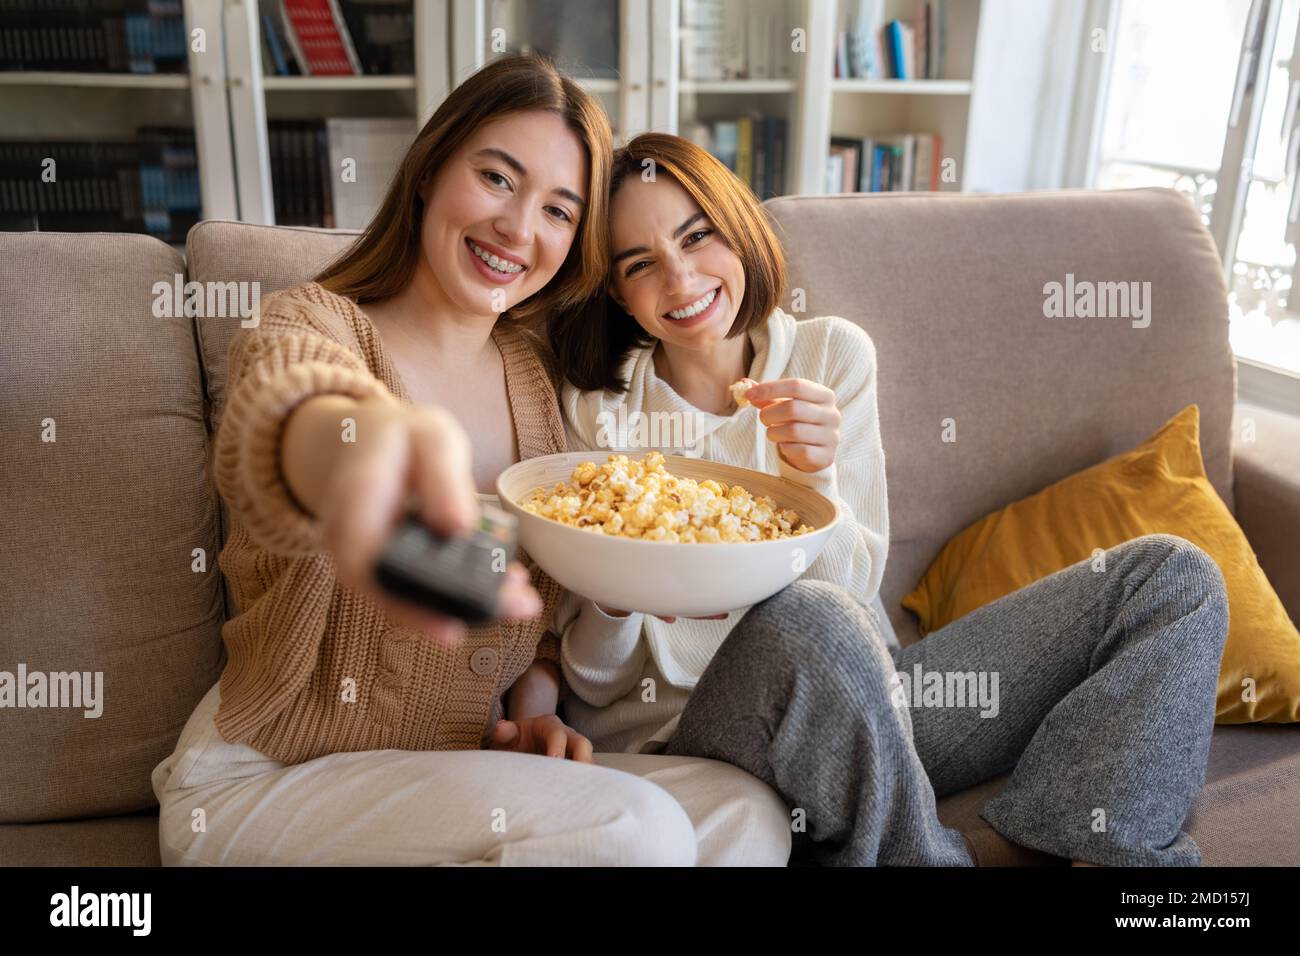 Les jeunes femmes européennes joyeuses avec télécommande mangent du pop-corn, s'amusent, profitent de temps libre, regardent des films Banque D'Images